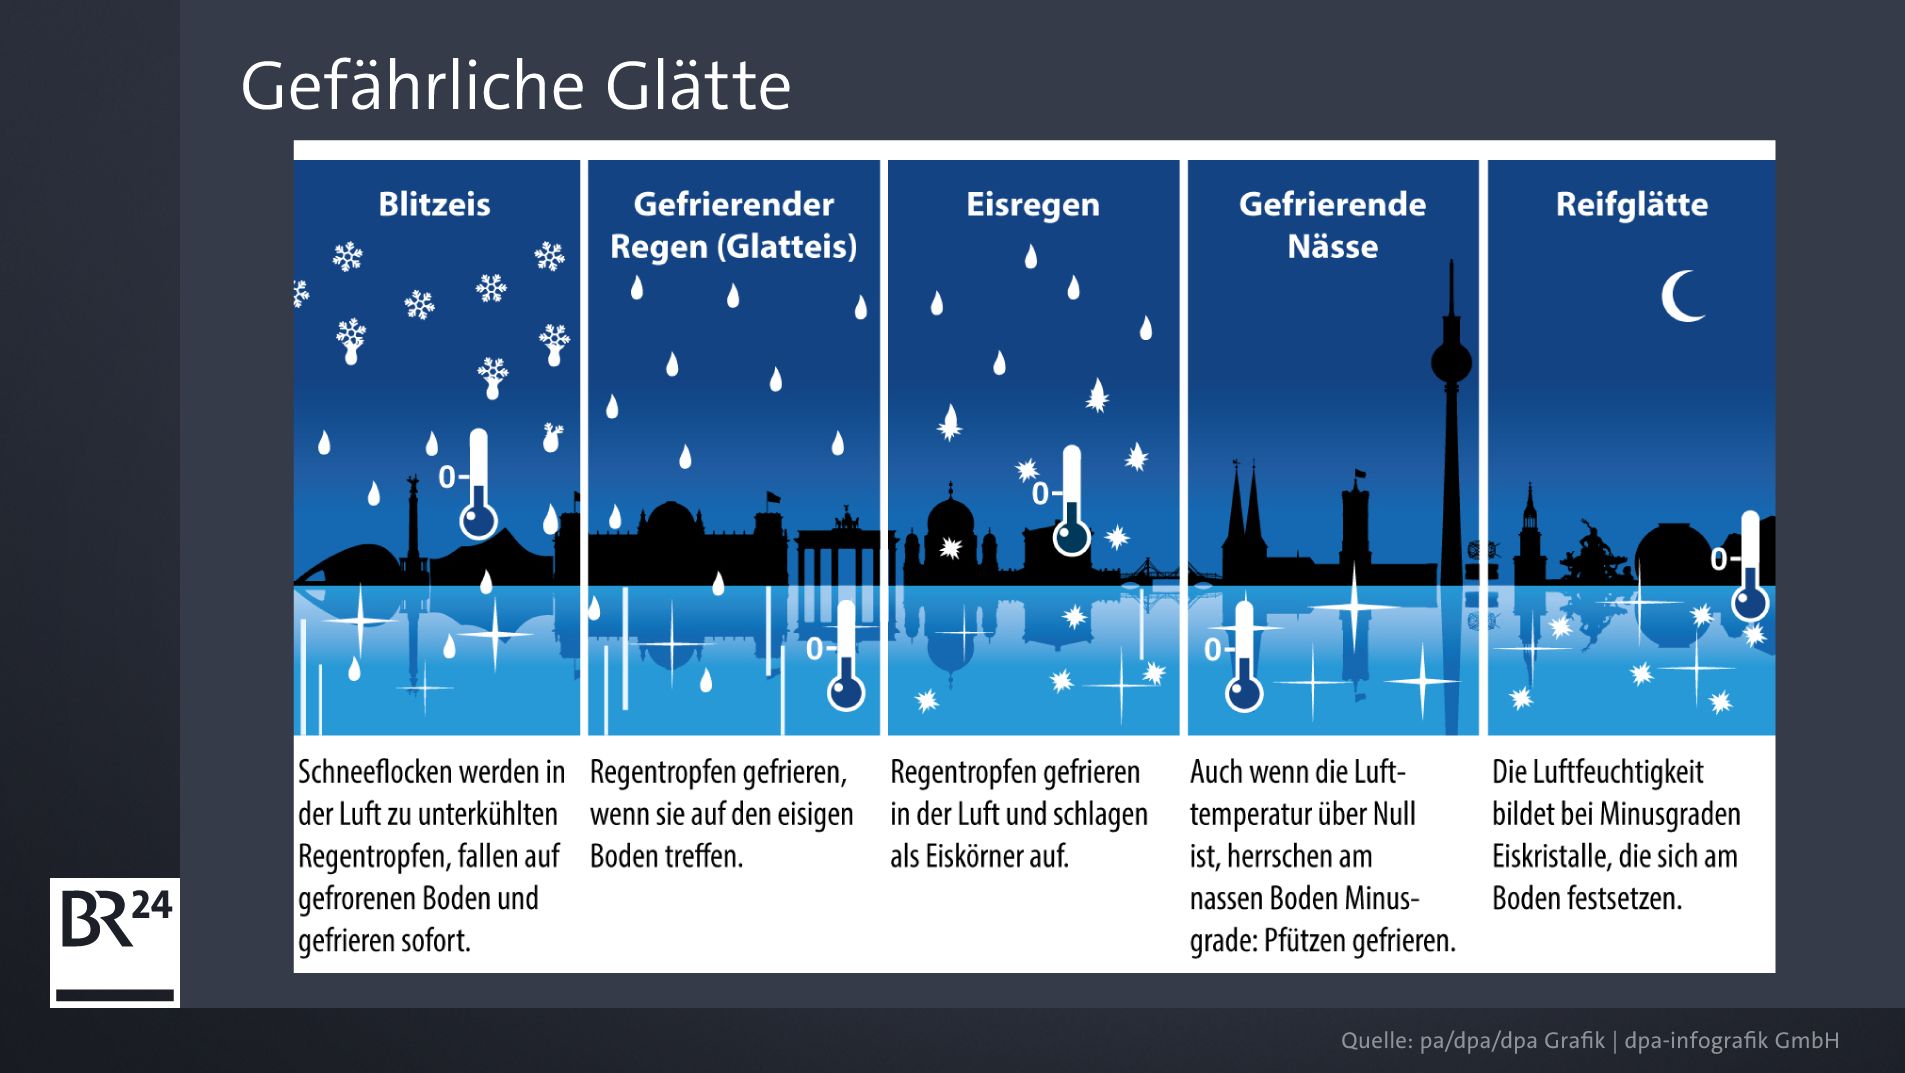 Dutzende Unfälle - und Warnung vor starkem Schneefall in Bayern